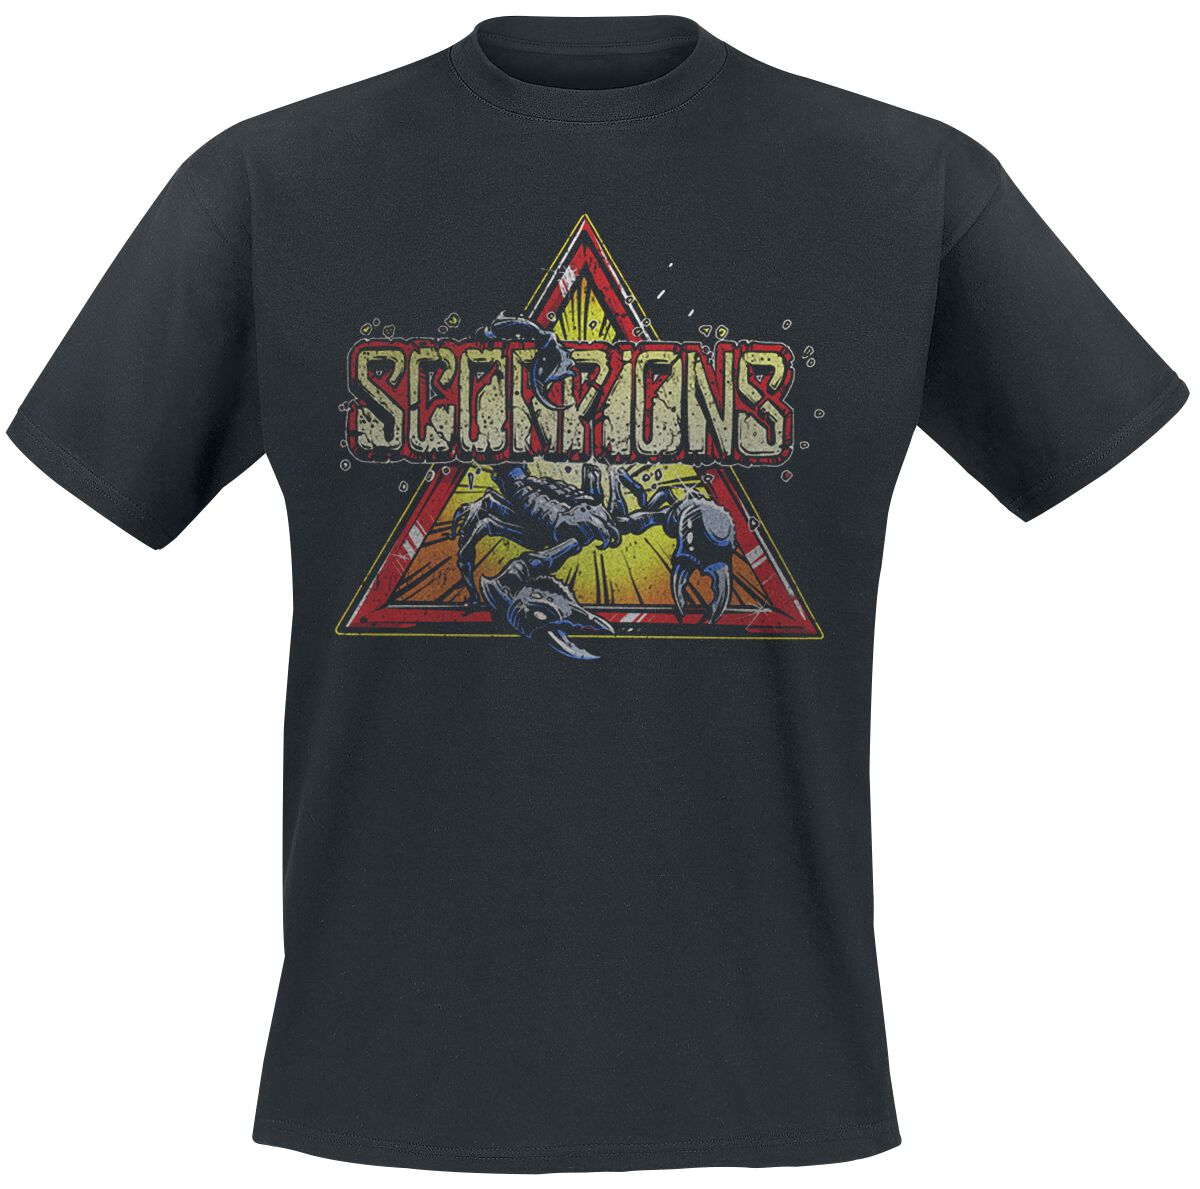 Scorpions T-Shirt - Triangle Scorpion - S bis 3XL - für Männer - Größe L - schwarz  - Lizenziertes Merchandise!